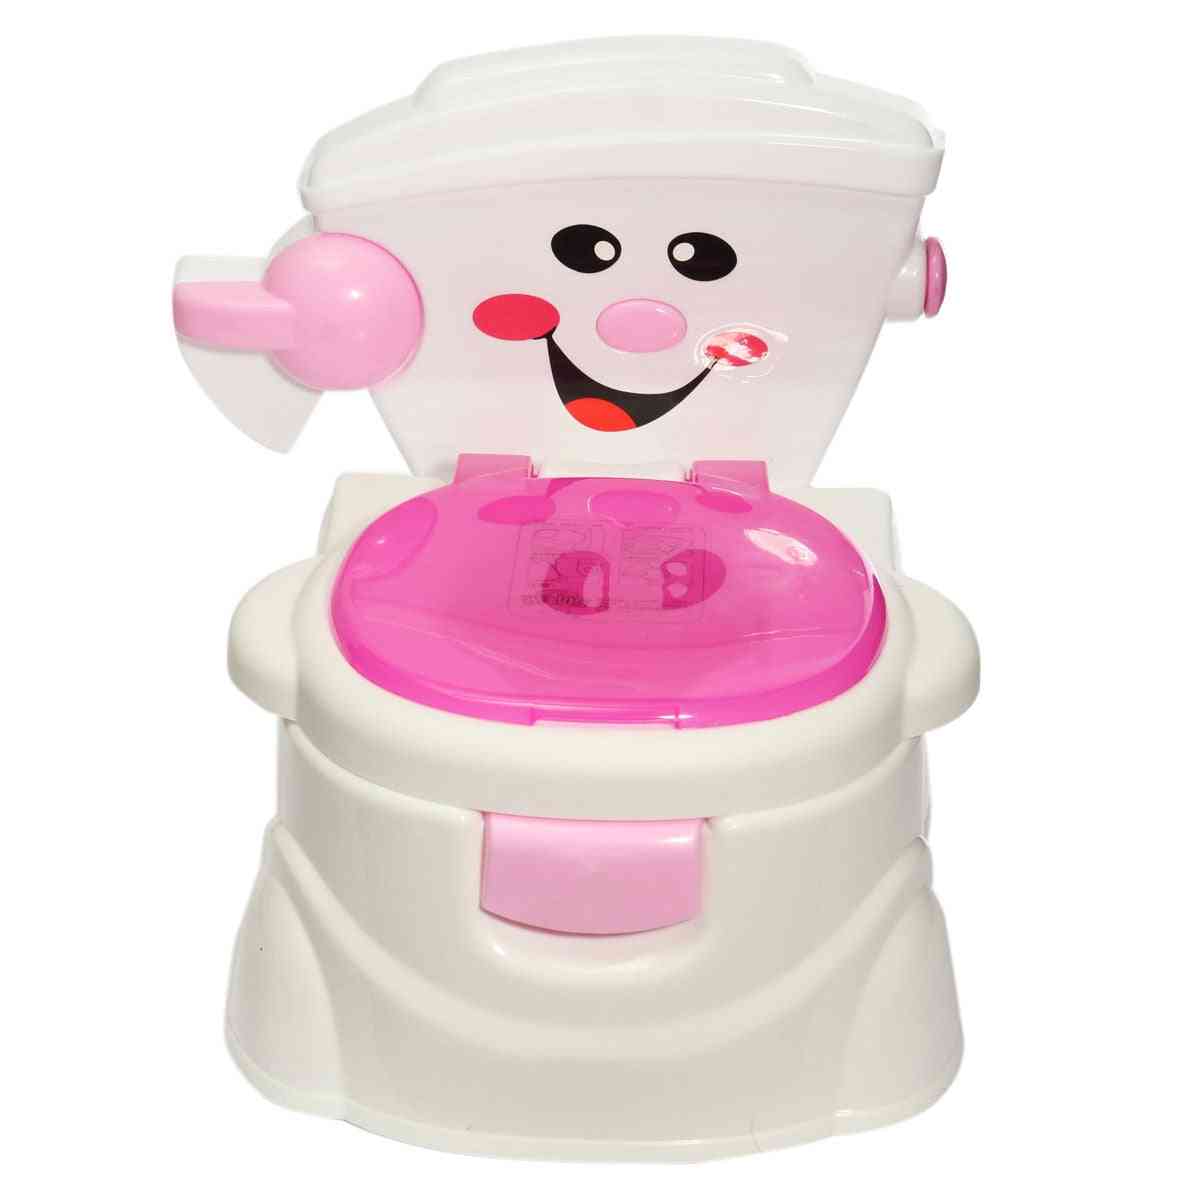 Portable Baby Potty Toilet Cartoon Cars